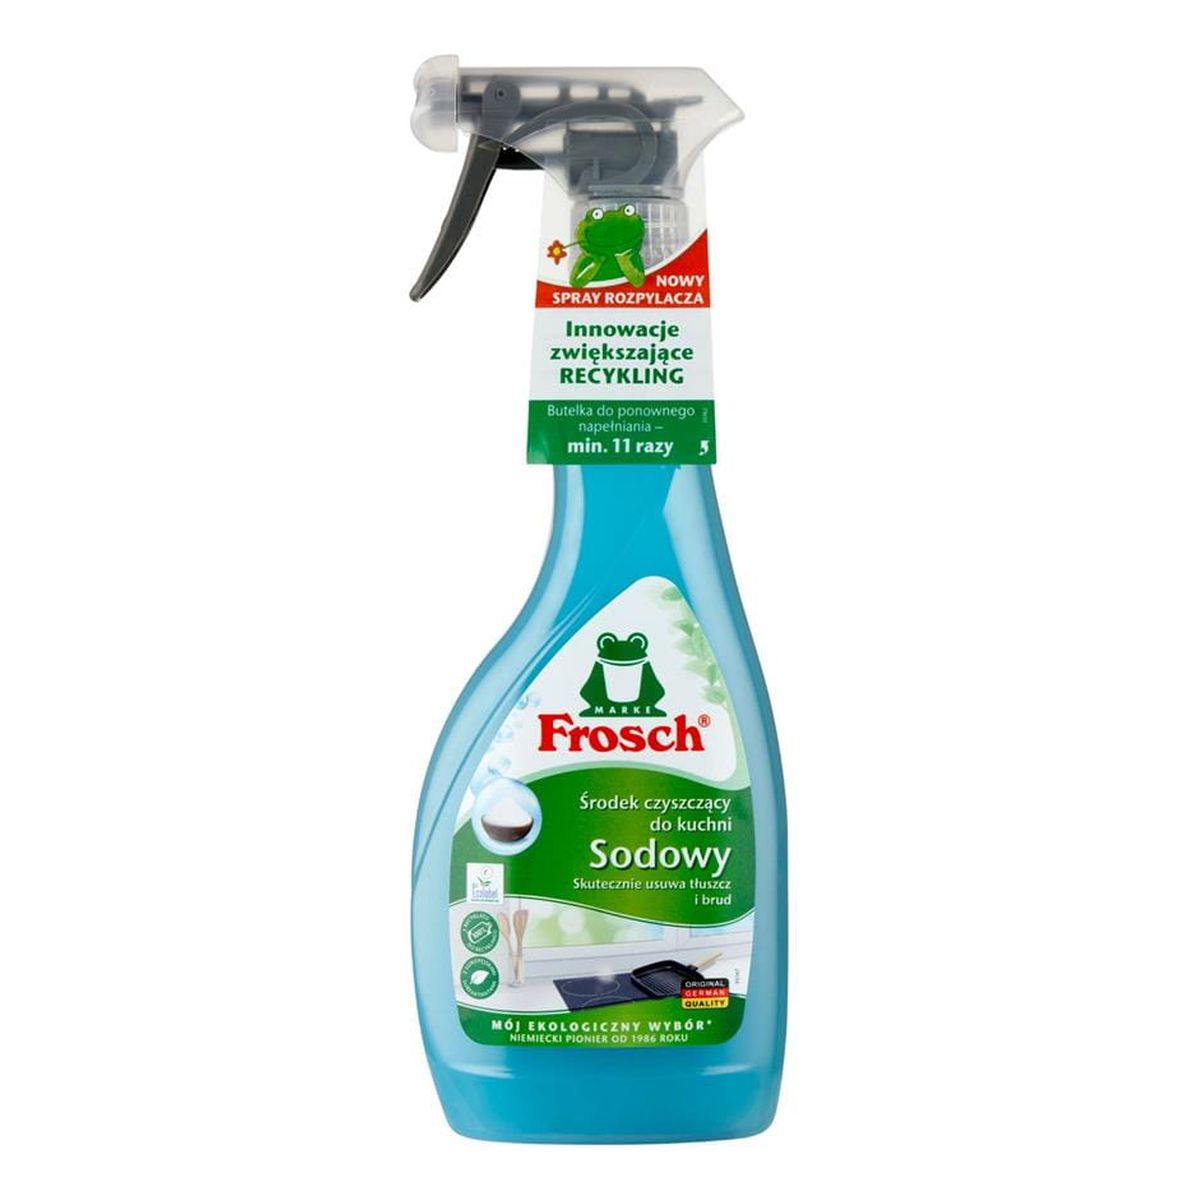 Frosch Spray do czyszczenia kuchni sodowy + łazienki lawenda + uniwersalny pomarańczowy + odkamieniacz malinowy 4x500ml